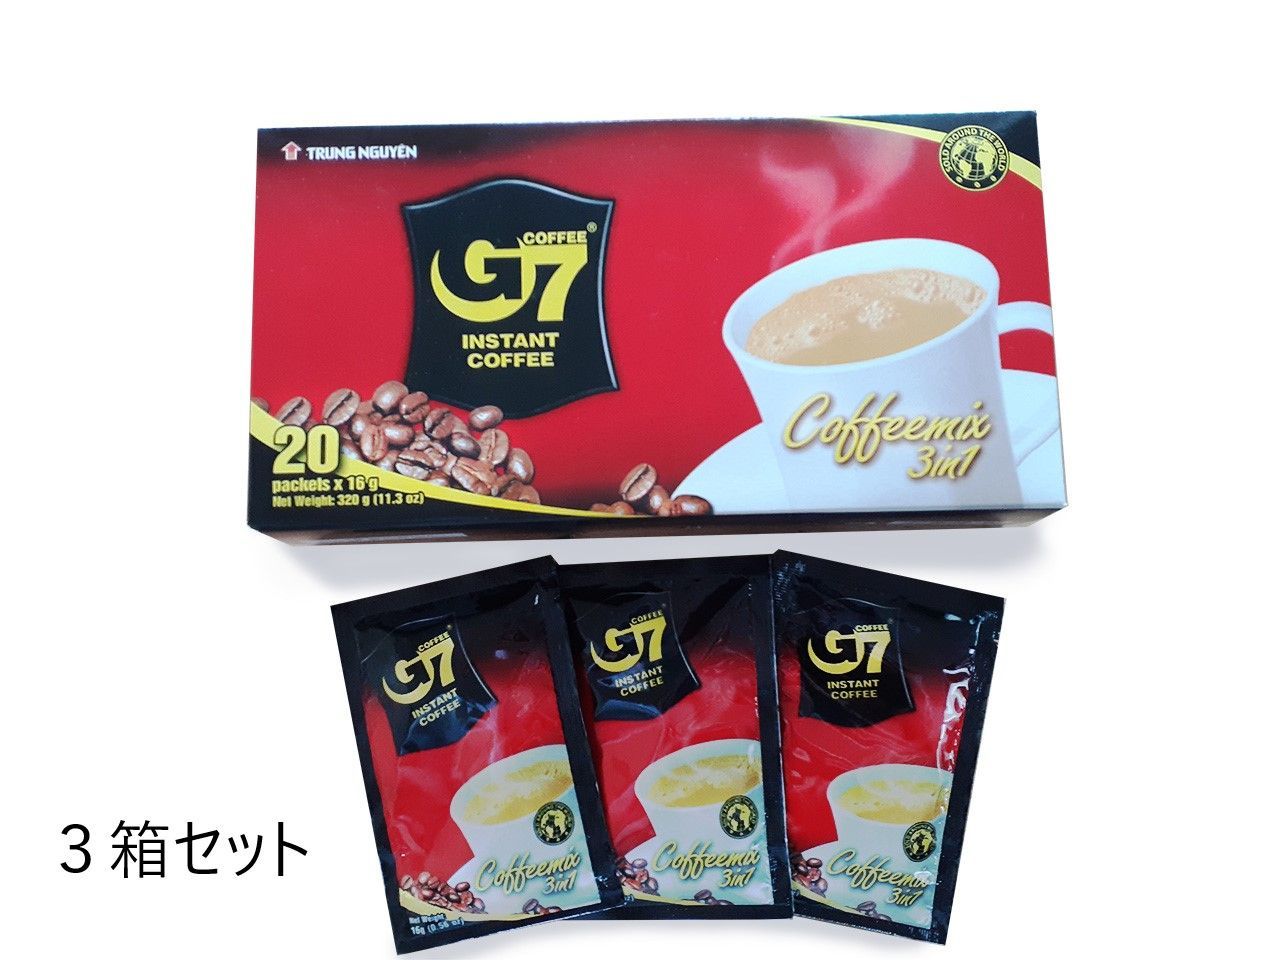 ベトナムコーヒー G7 3in1 20袋入インスタント スティック カフェオレ 